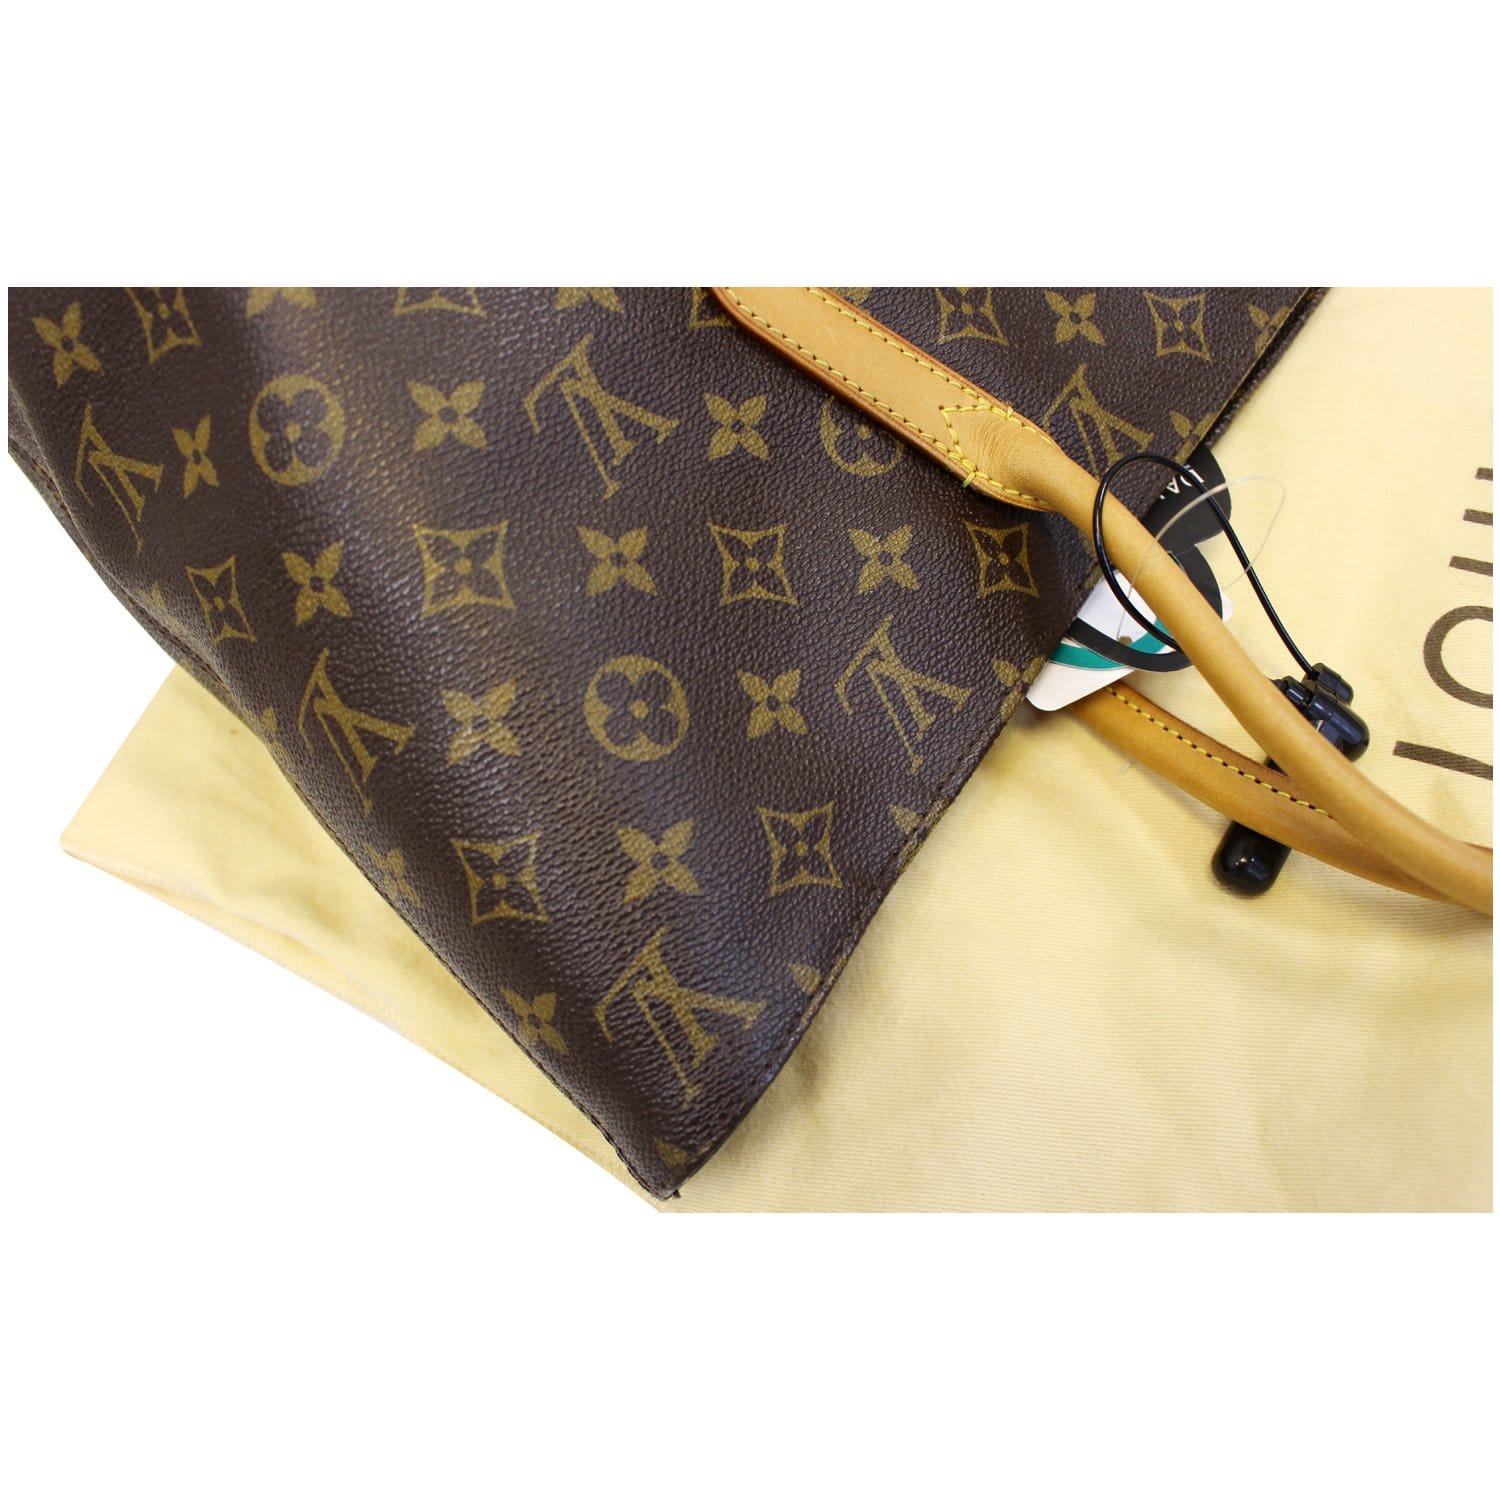 Louis Vuitton, Bags, Authentic Louis Vuitton Raspail Mm